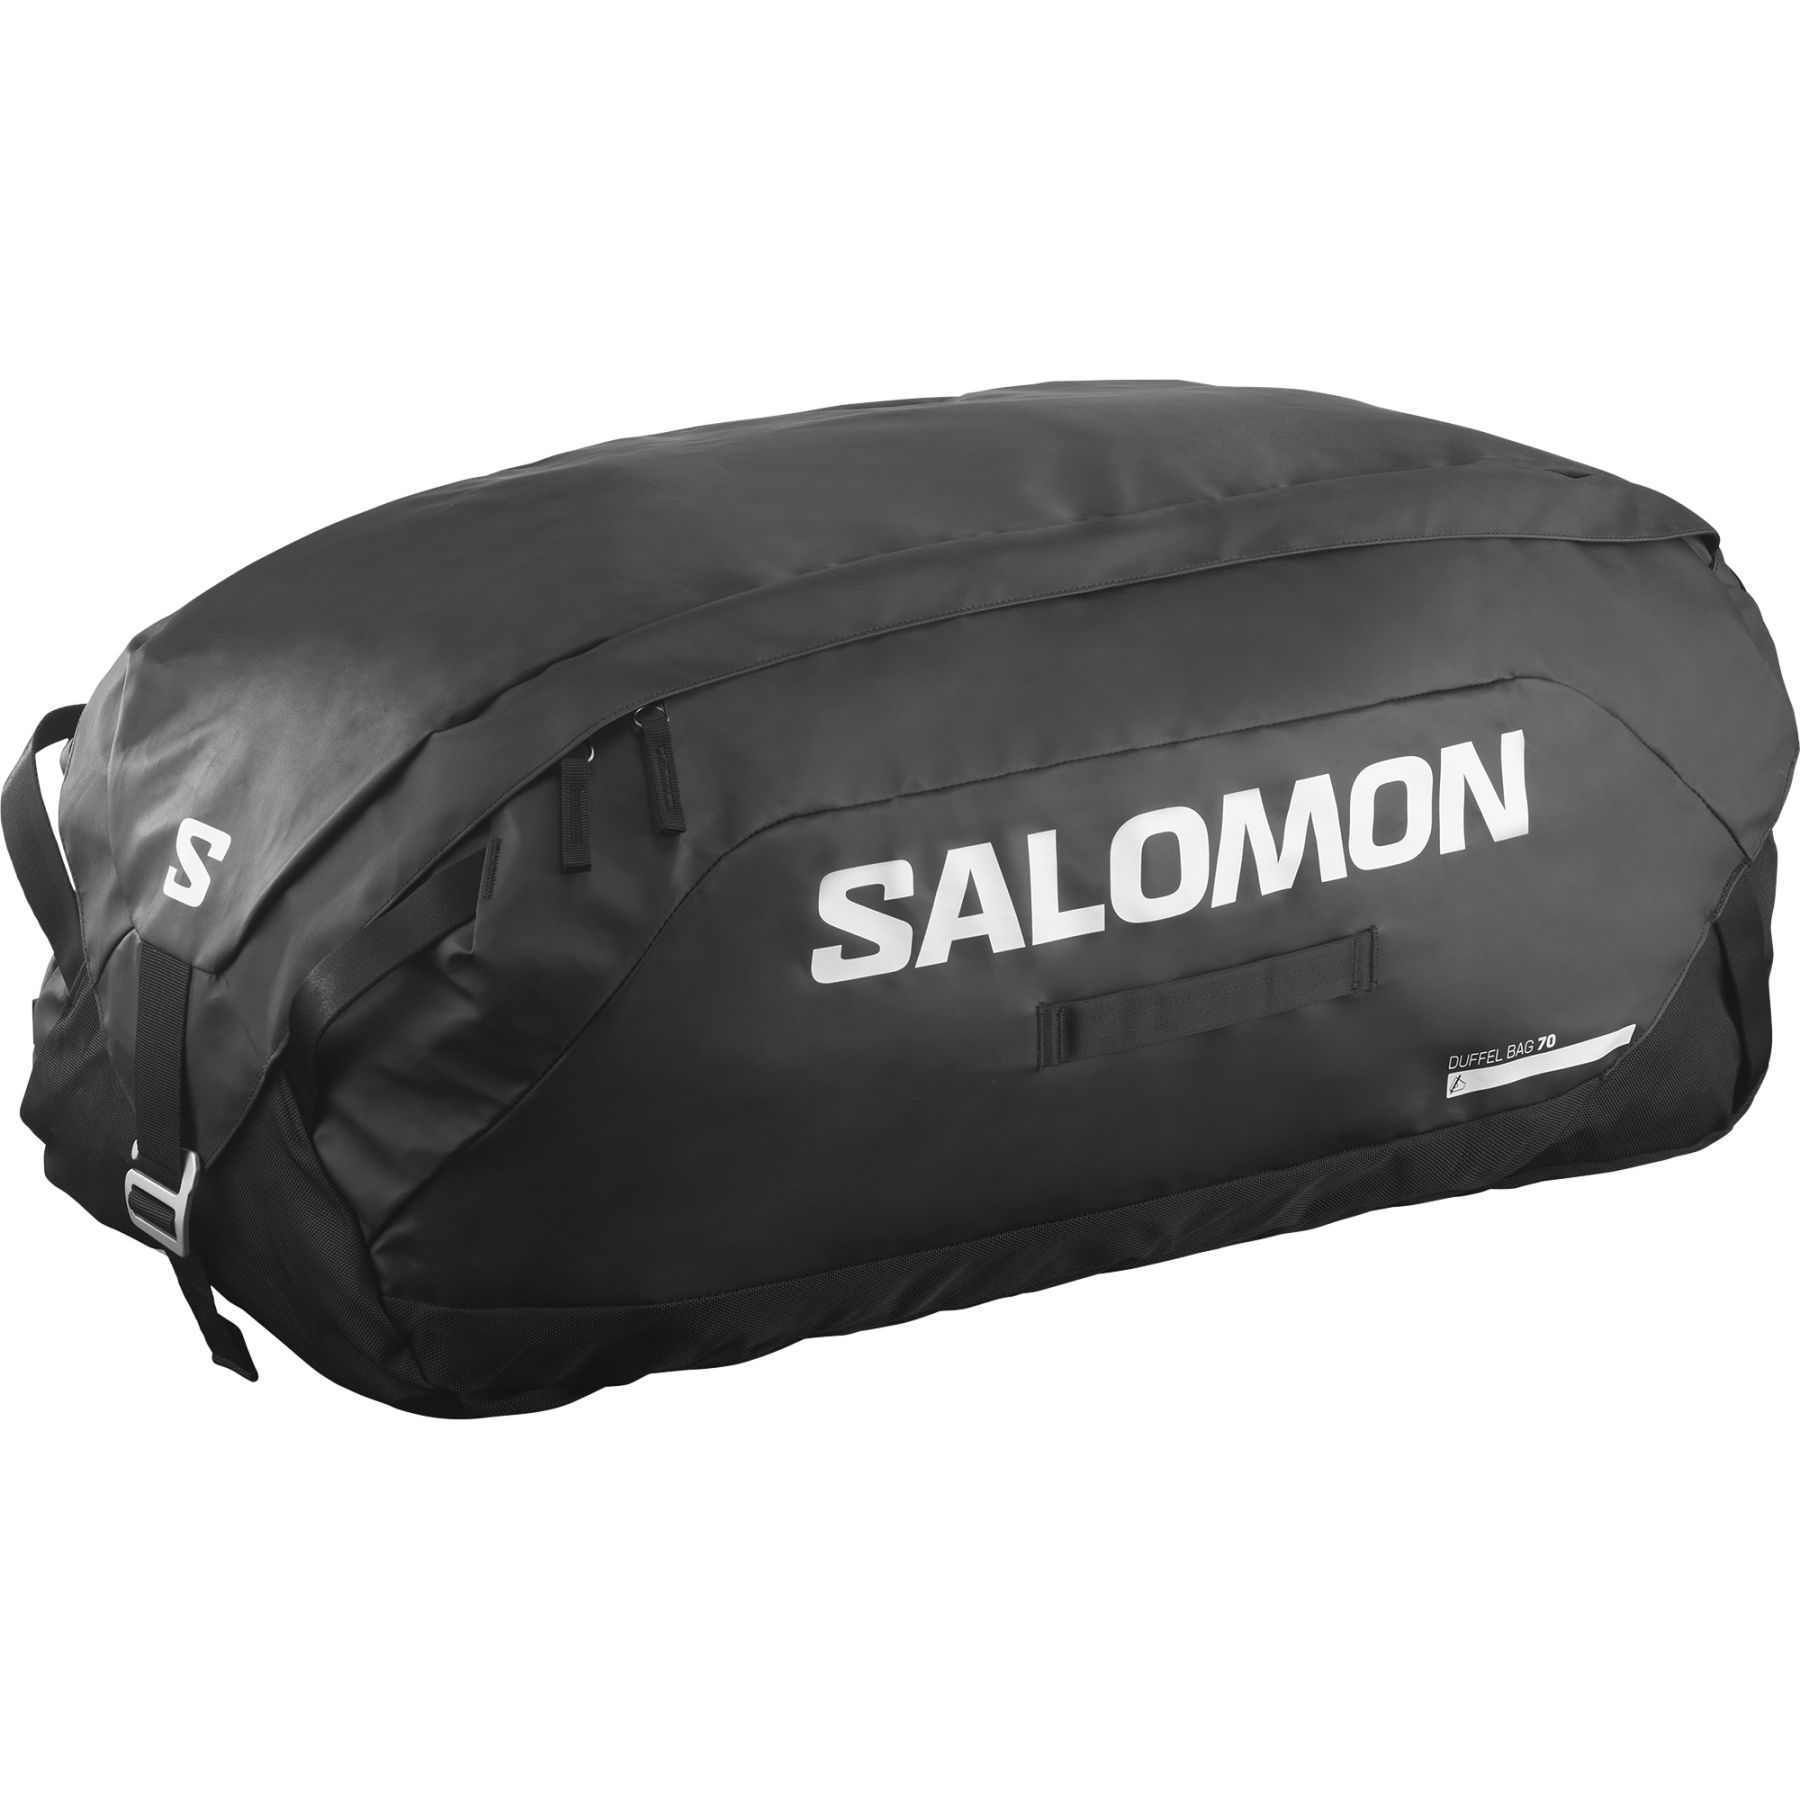 Brug Salomon Duffle Bag, 70L, sort til en forbedret oplevelse